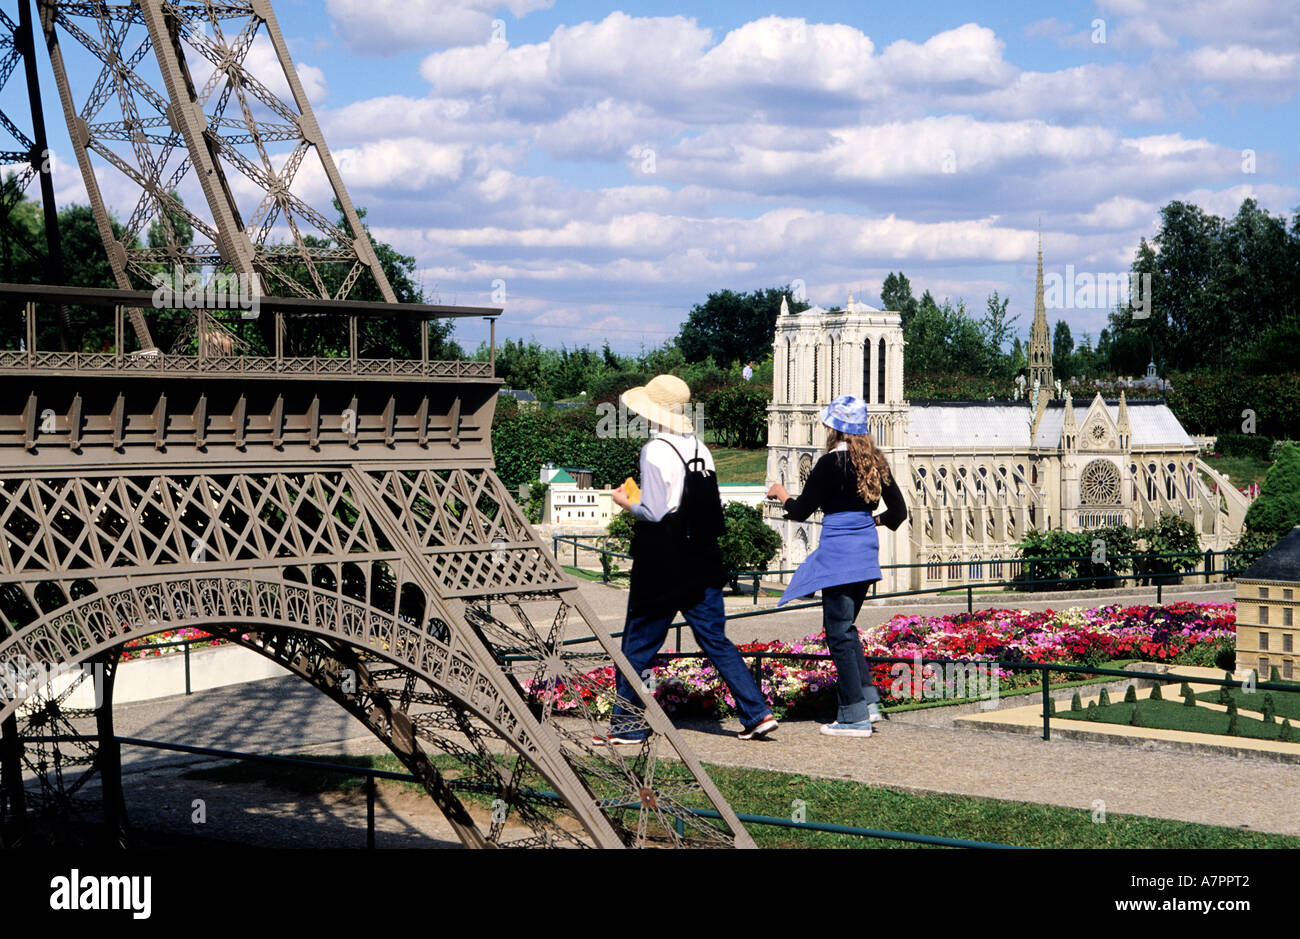 France, Yvelines, Elancourt, France Miniature leisure park Stock Photo